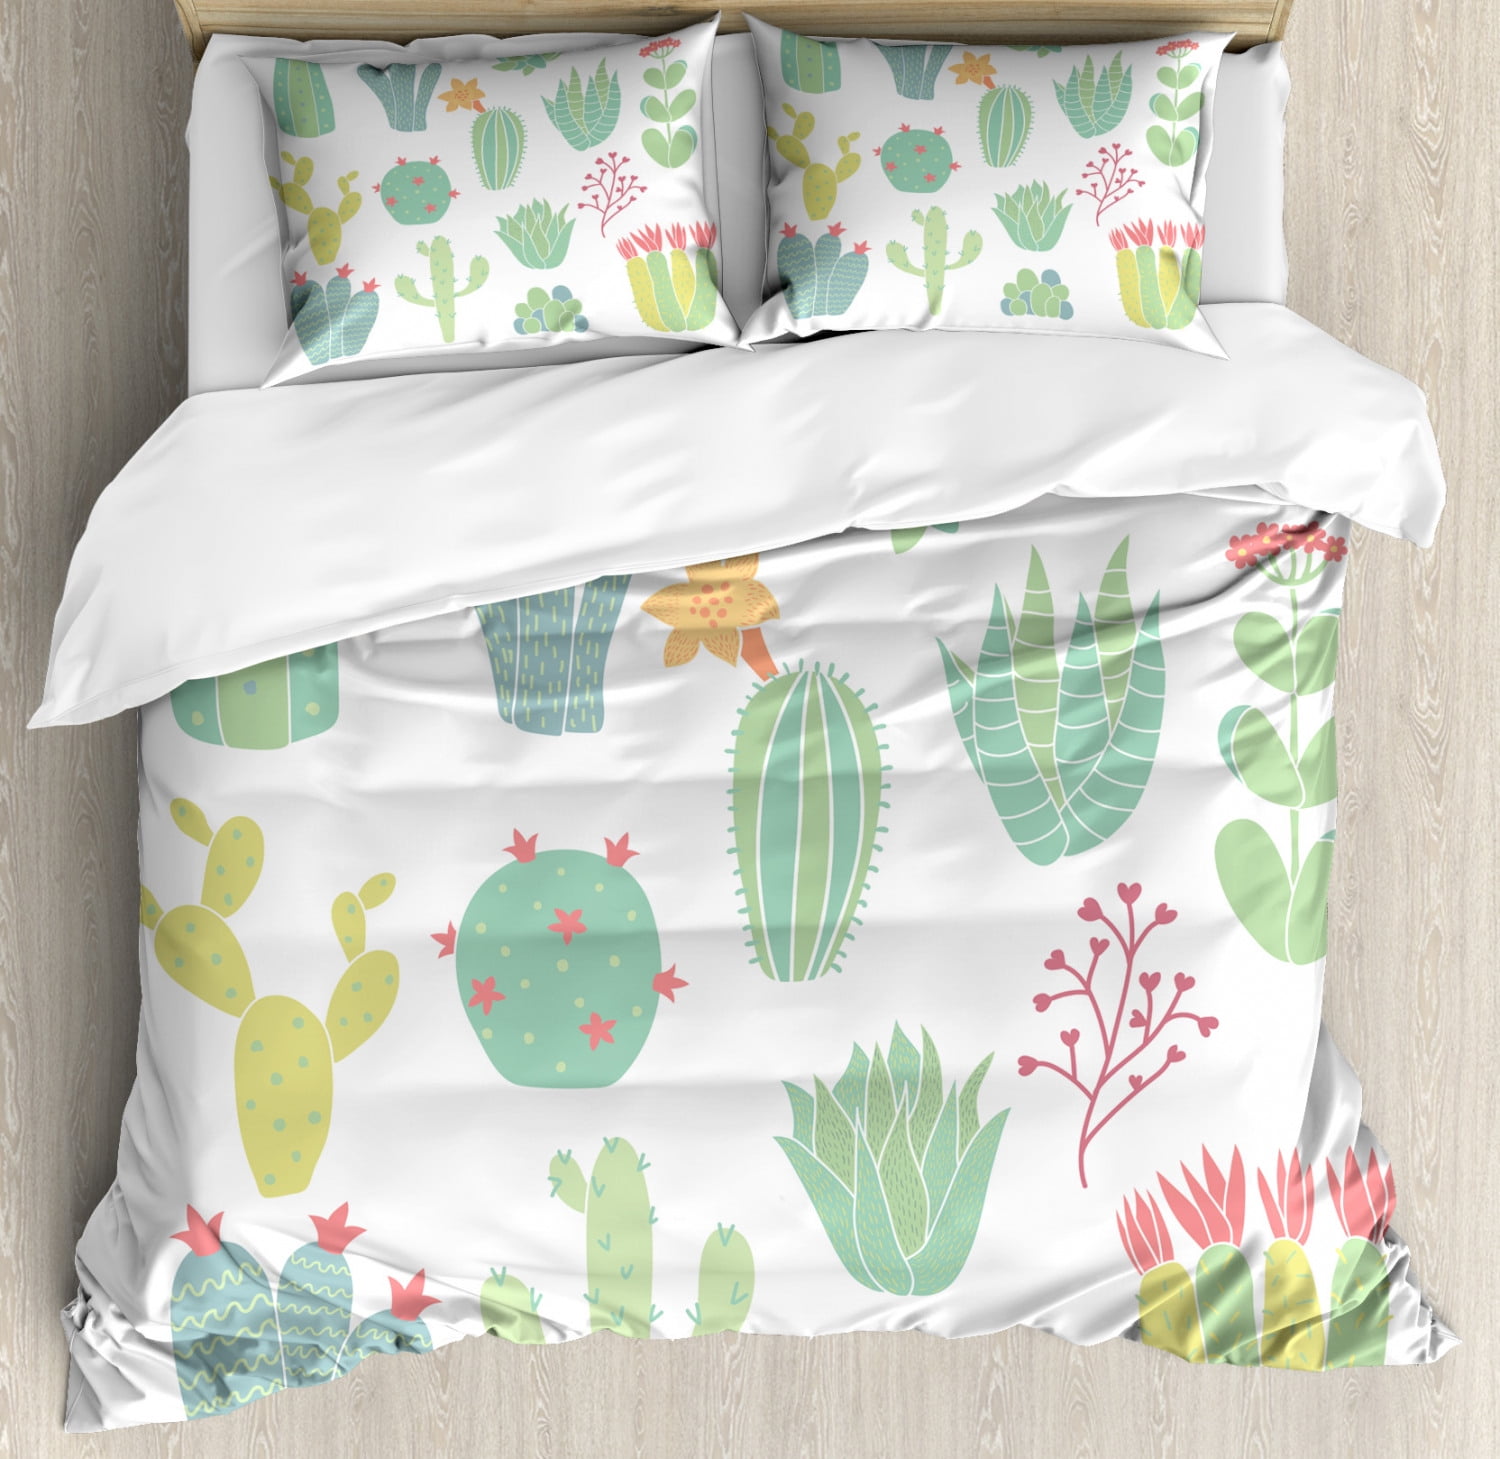 Grey White Yellow Green Cactus Cacti Theme Single Duvet Cover Bedding Set 